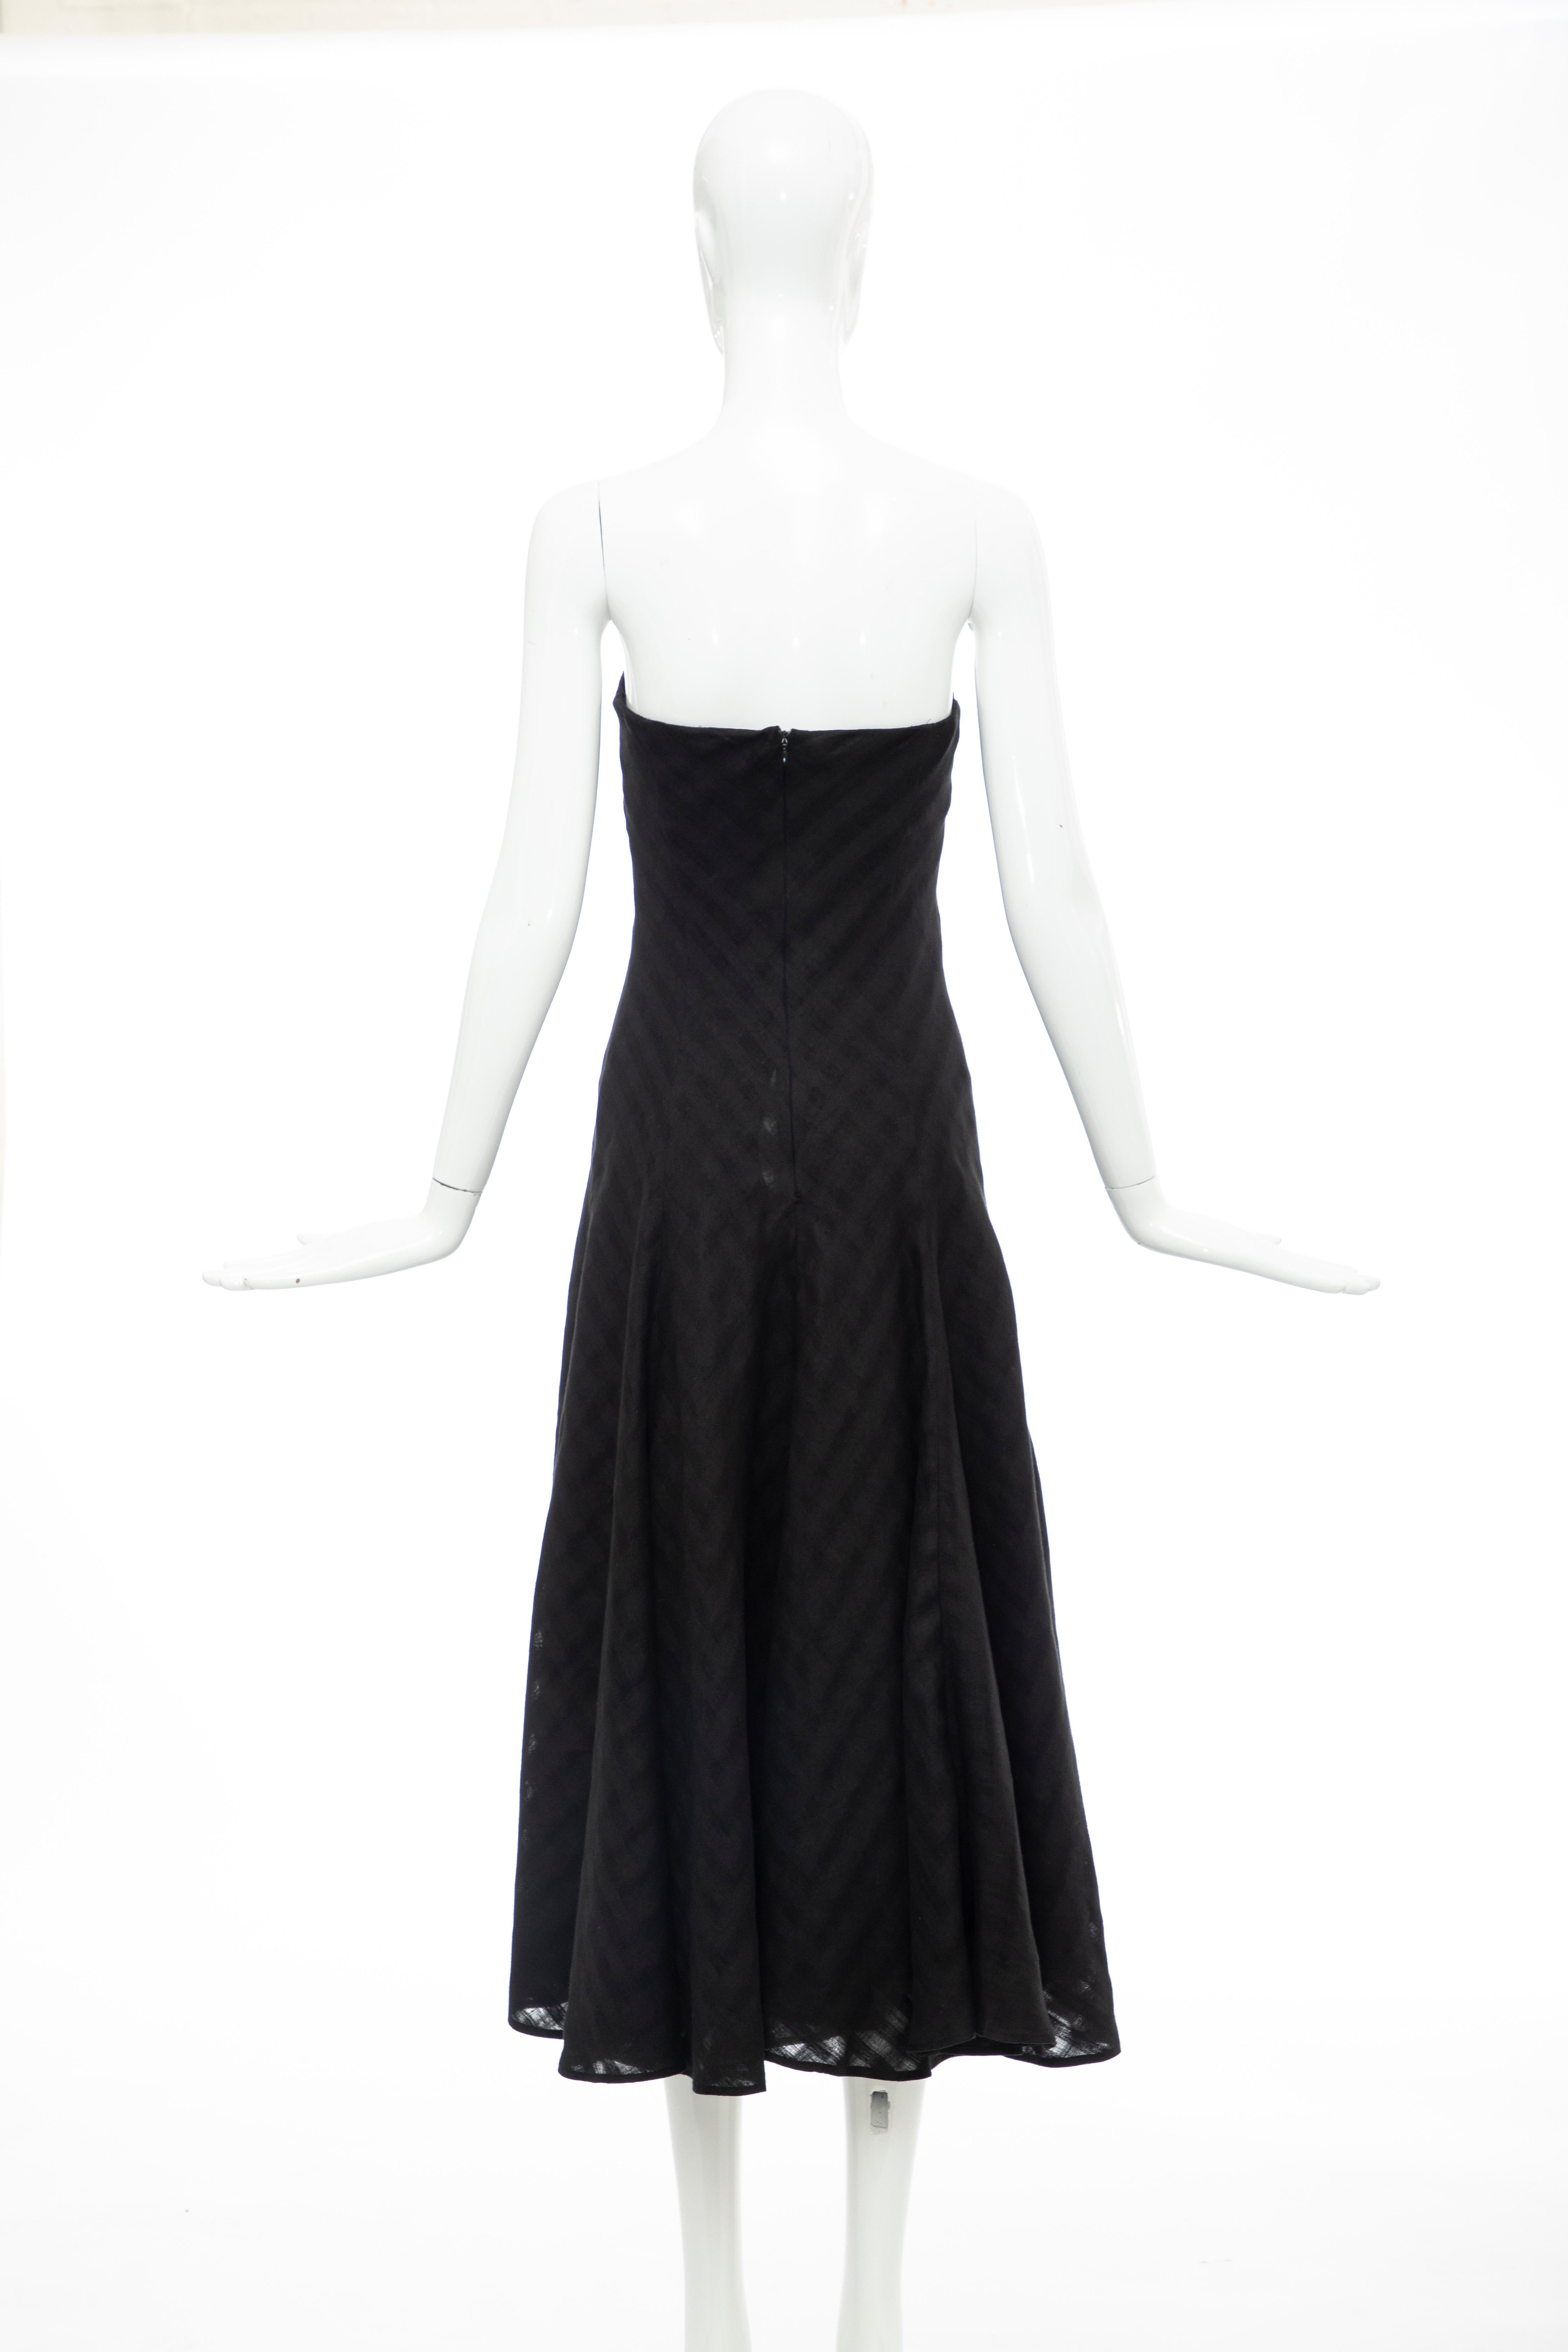 Olivier Theyskens Runway Black Linen Dress, Spring 2000 For Sale 3